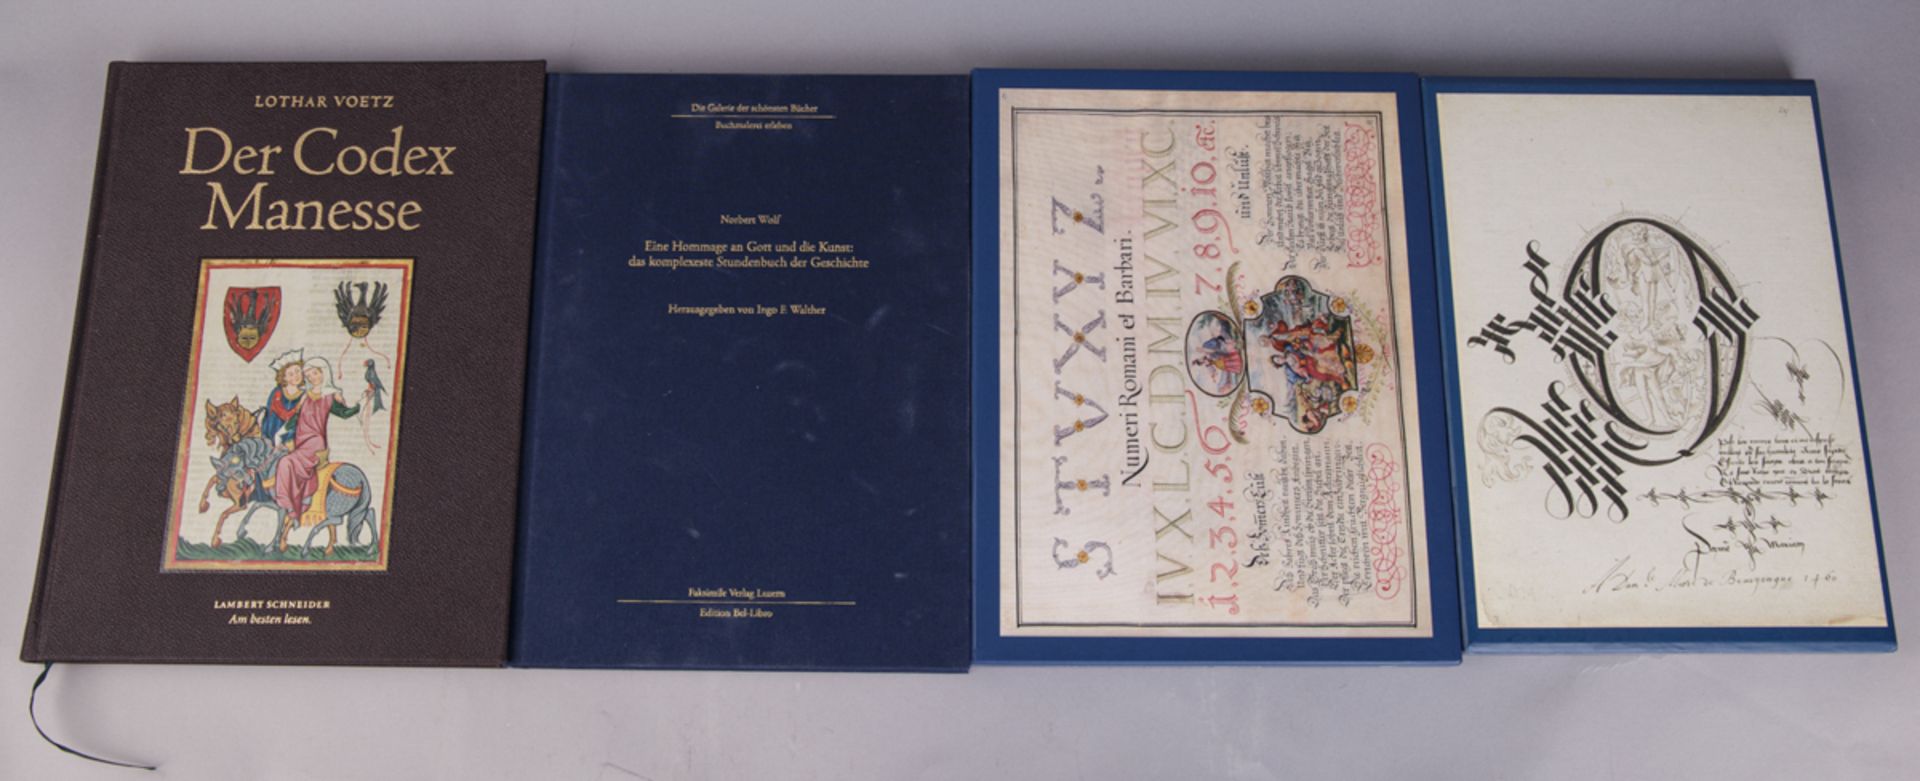 Konvolut von 4 Büchern über mittelalterliche Buchmalerei - Image 2 of 5